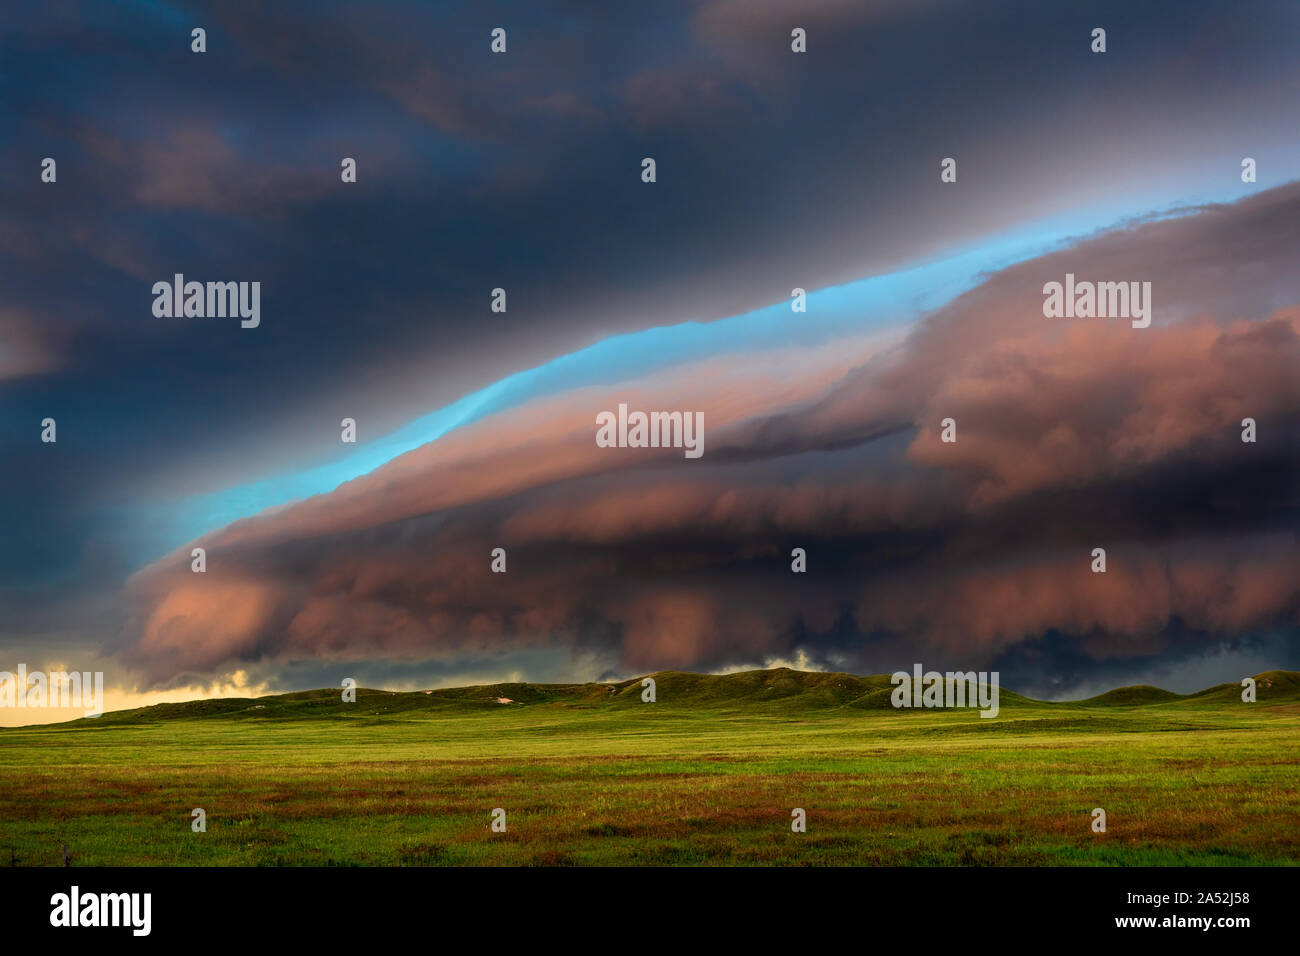 Le nuvole di tempesta scura conducono un temporale drammatico e ostico su un paesaggio panoramico vicino a Lingle, Wyoming Foto Stock